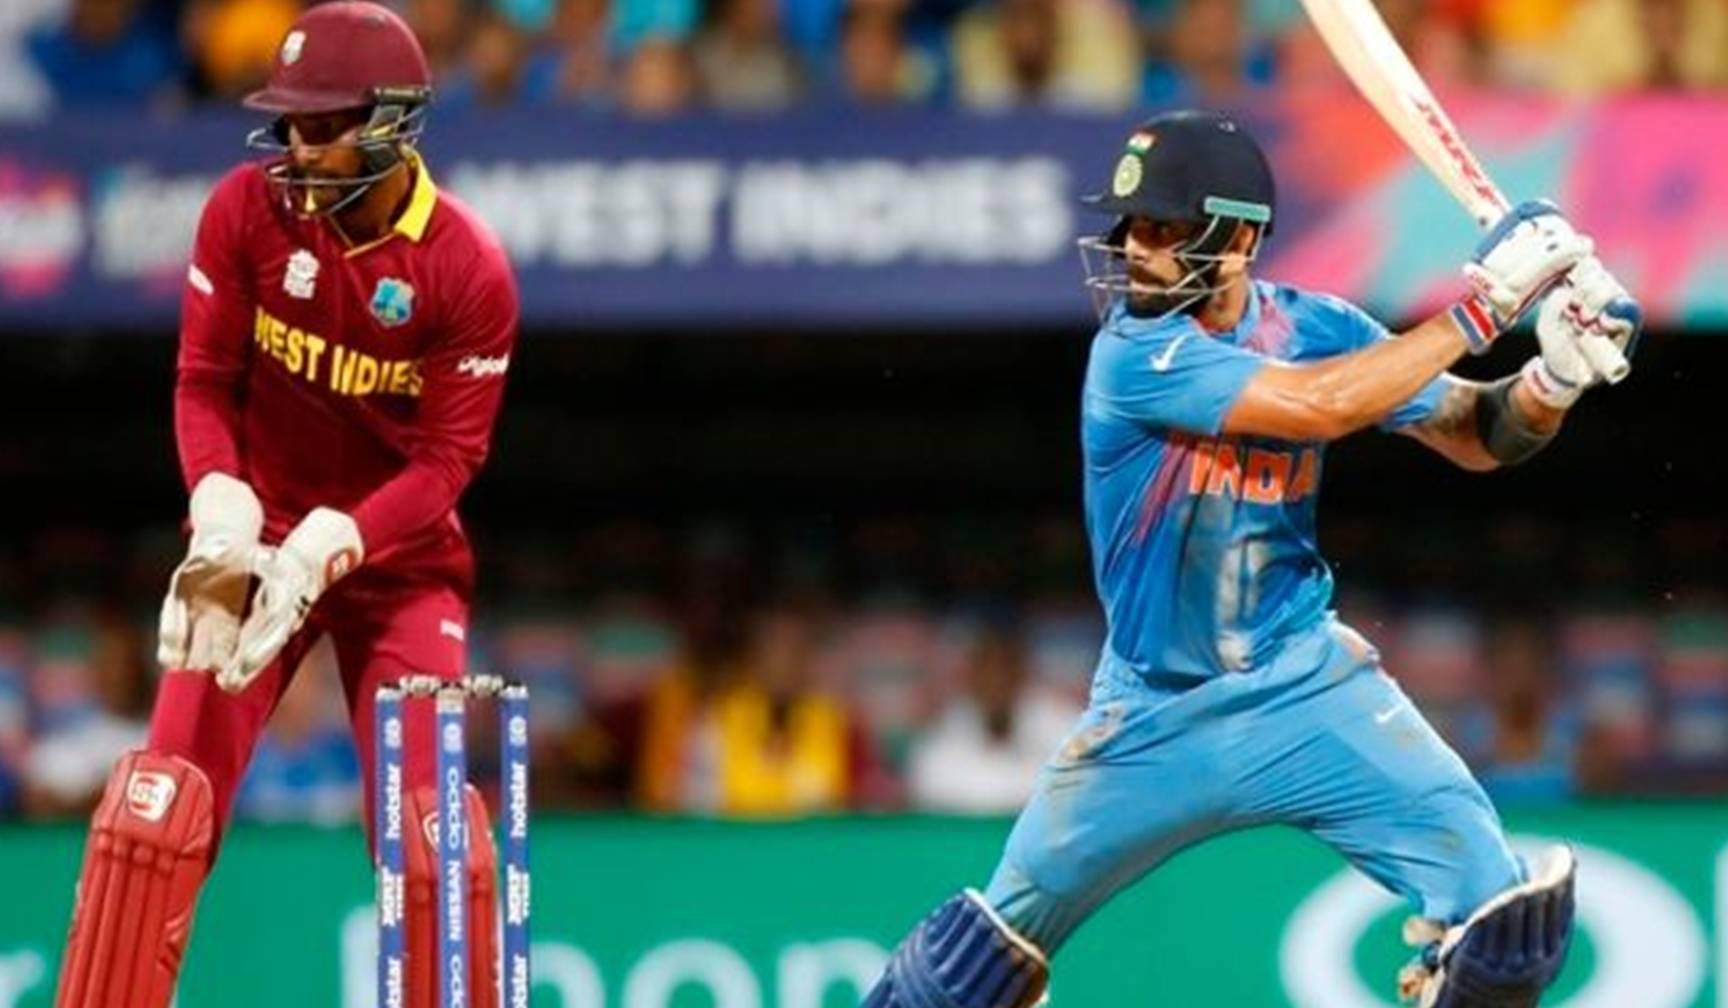 IND vs WI : जीतने के लिए उतरेगी टीम इंडिया, इस युवा खिलाड़ी को मिल सकता है वनडे में डेब्यू का चांस